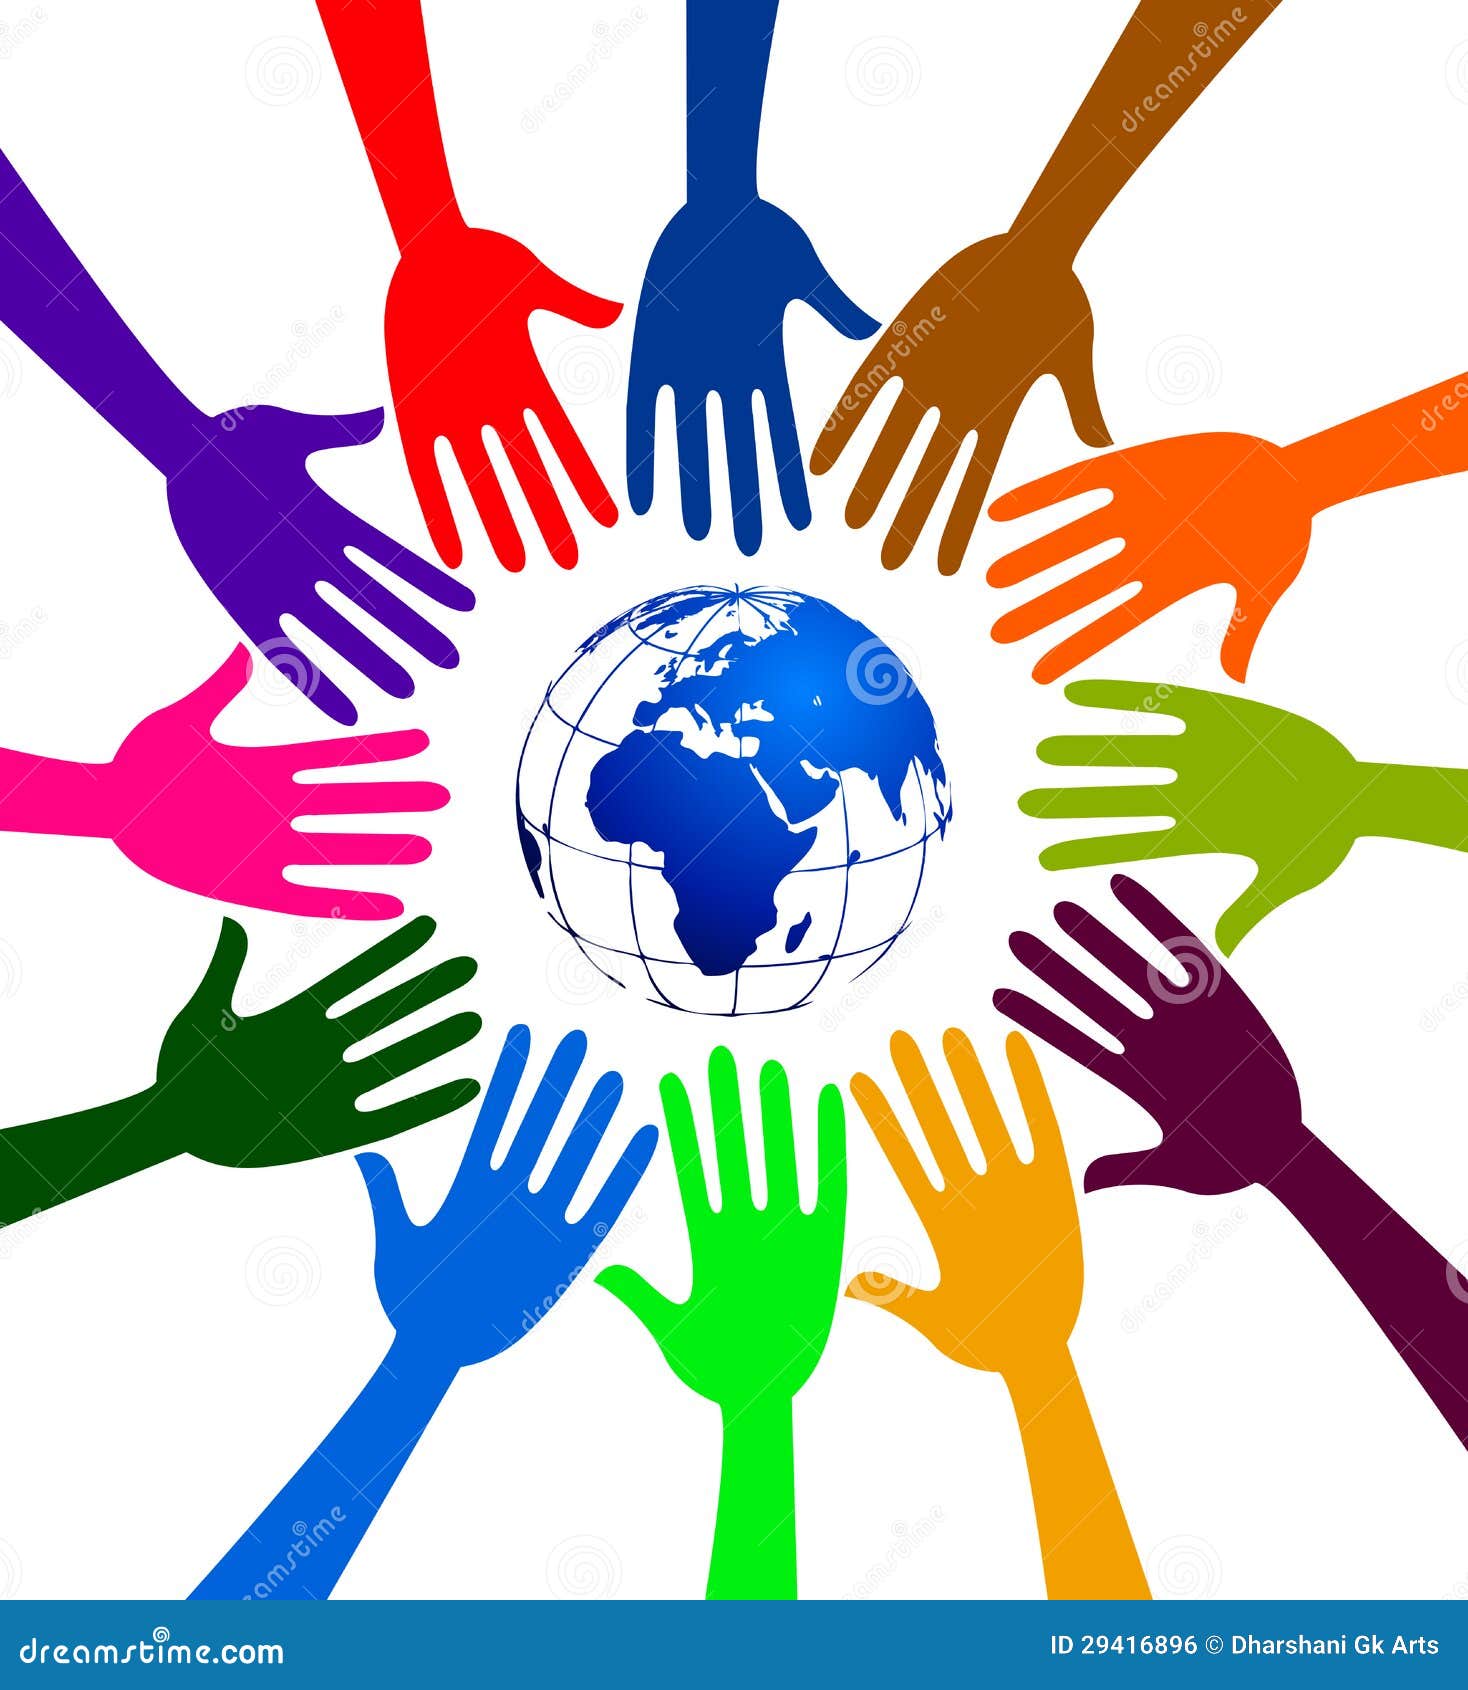 Globe Hands Logo Royalty Free Stock Image - Image: 29416896